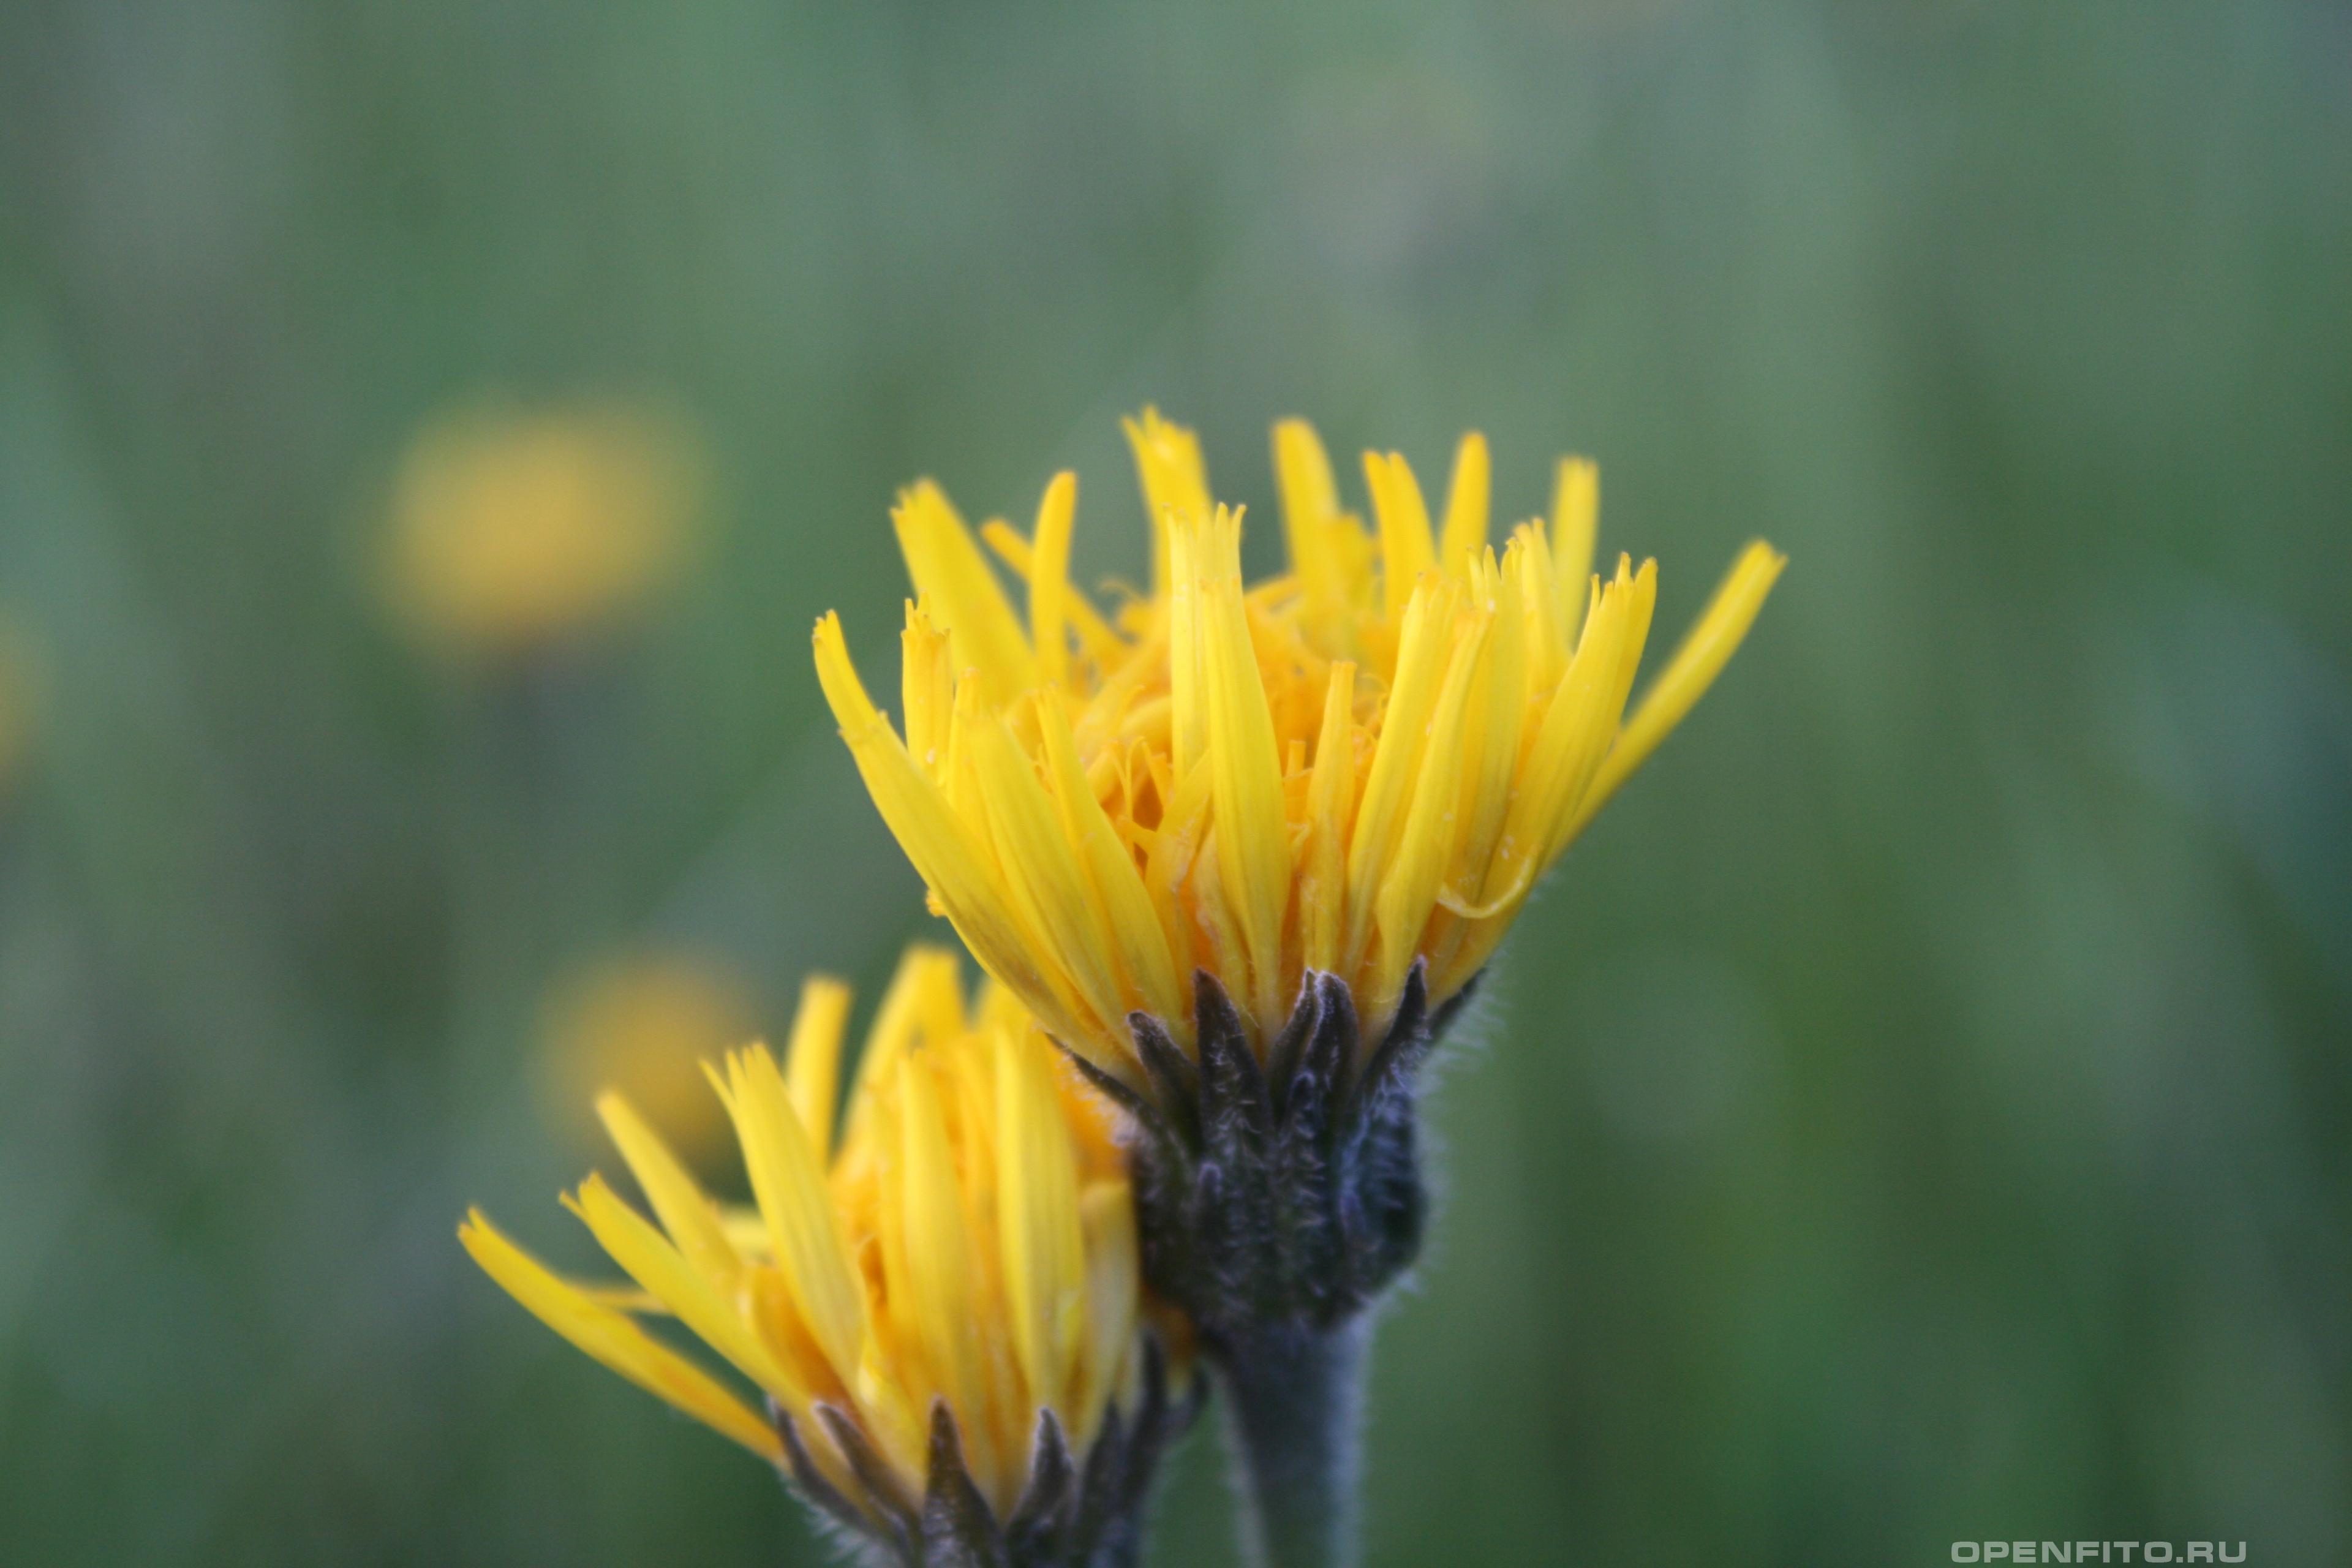 Троммсдорфия крапчатая - фотография цветка